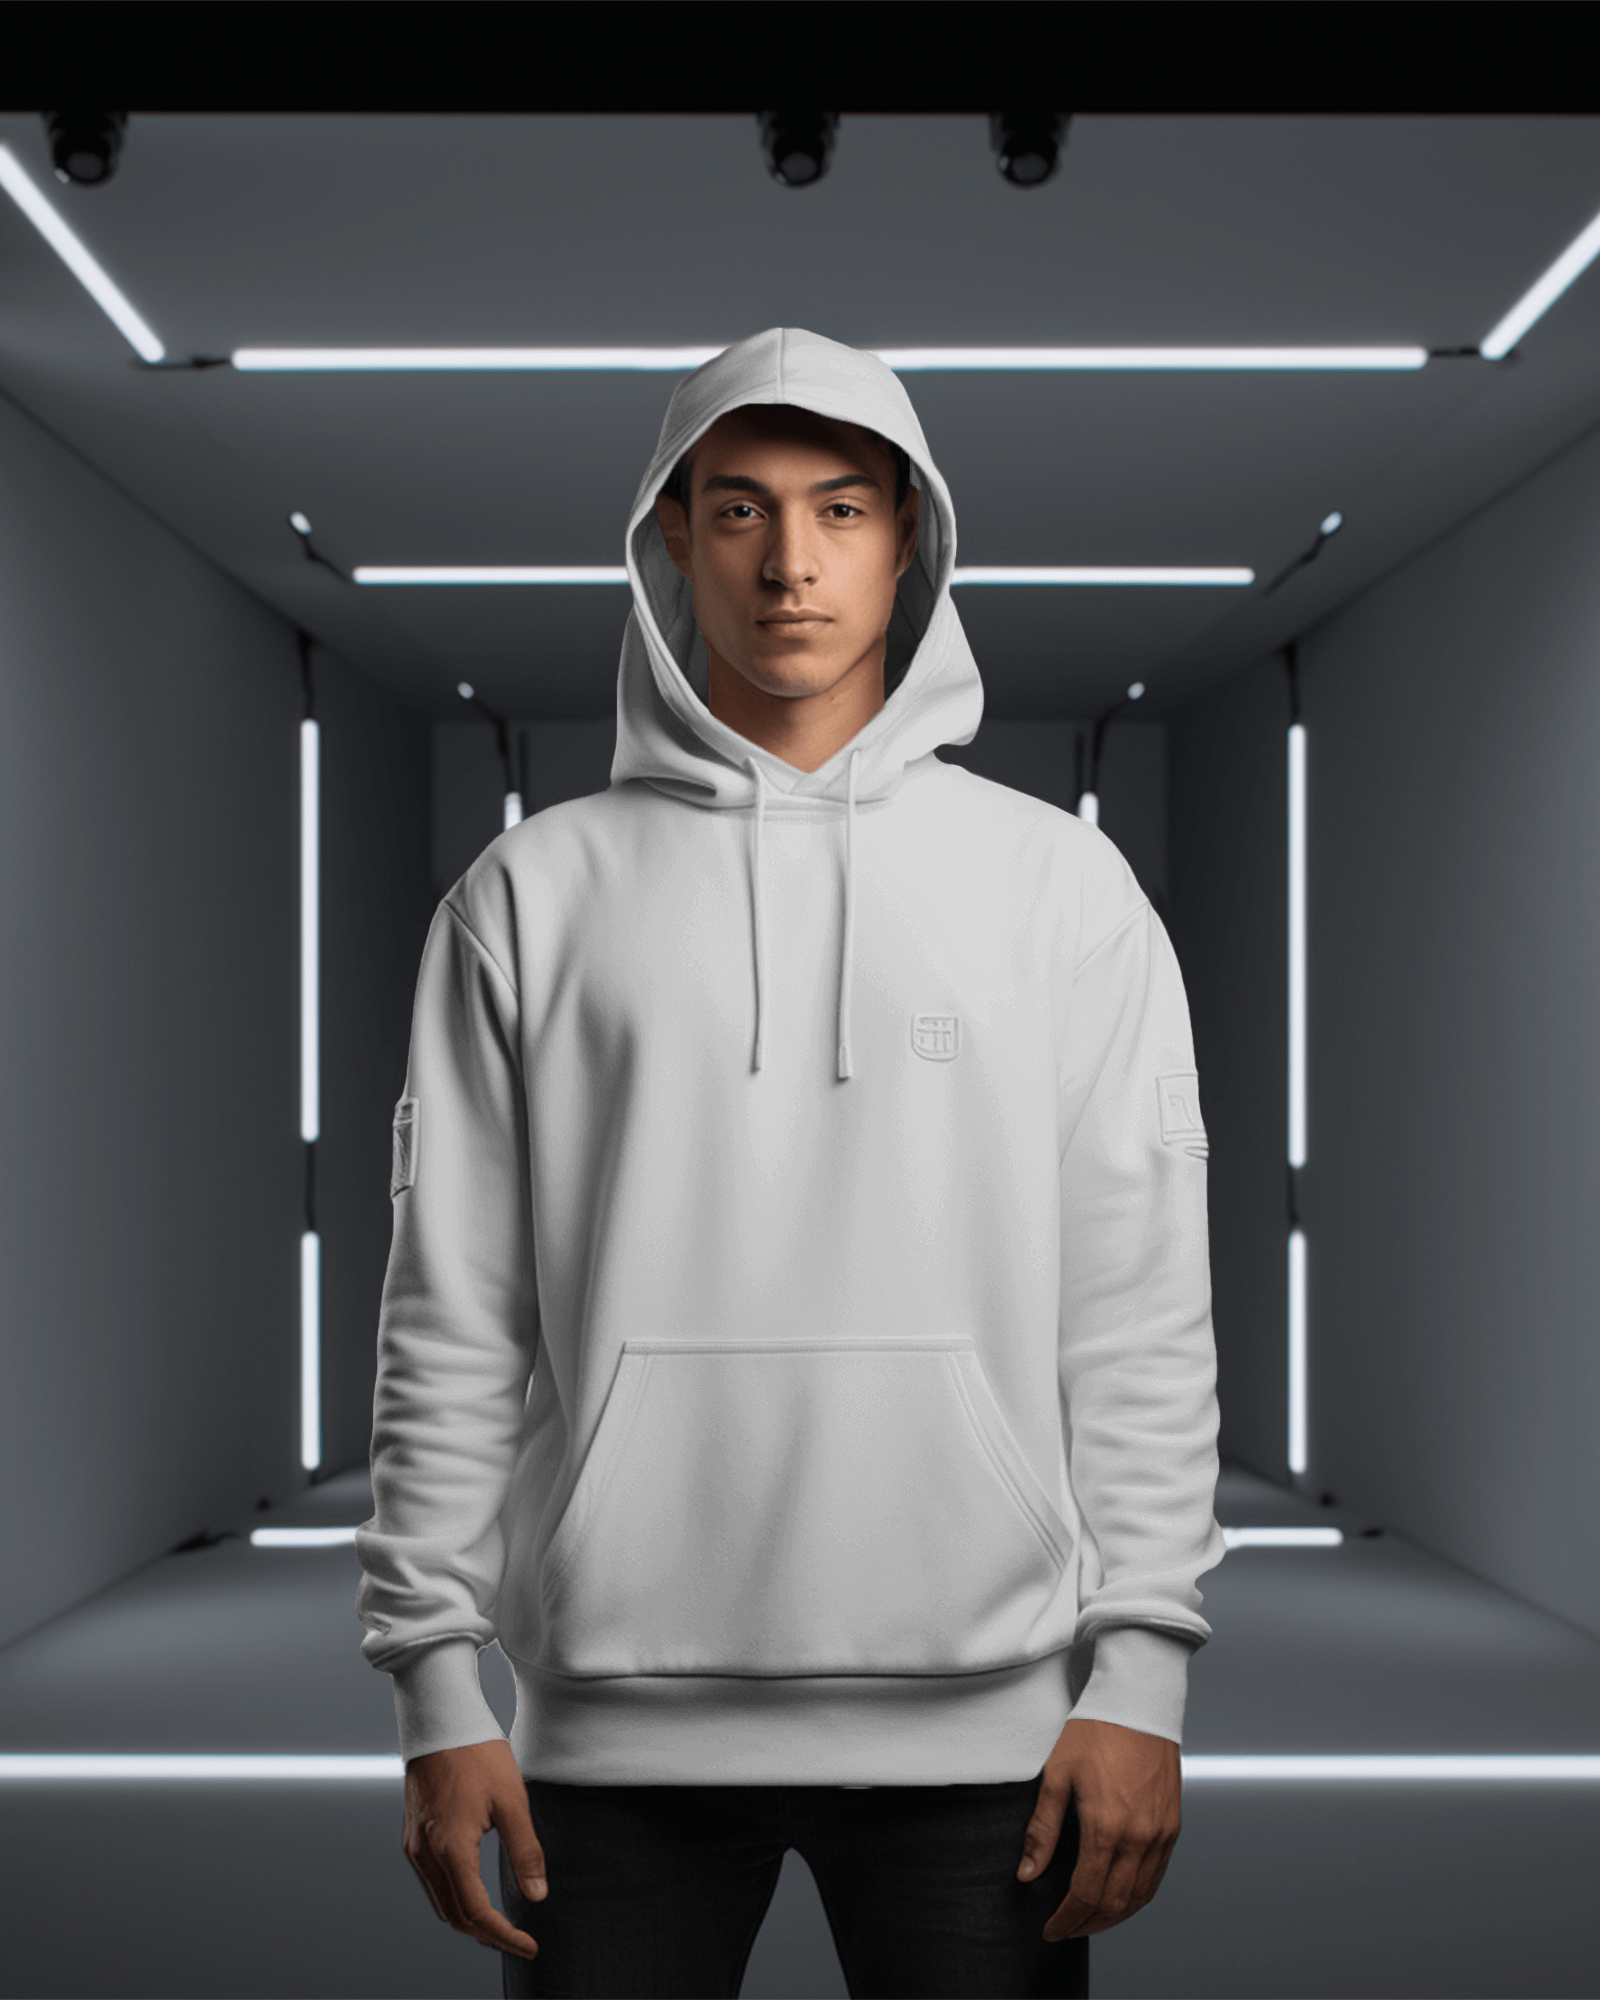 hackers hoodies design